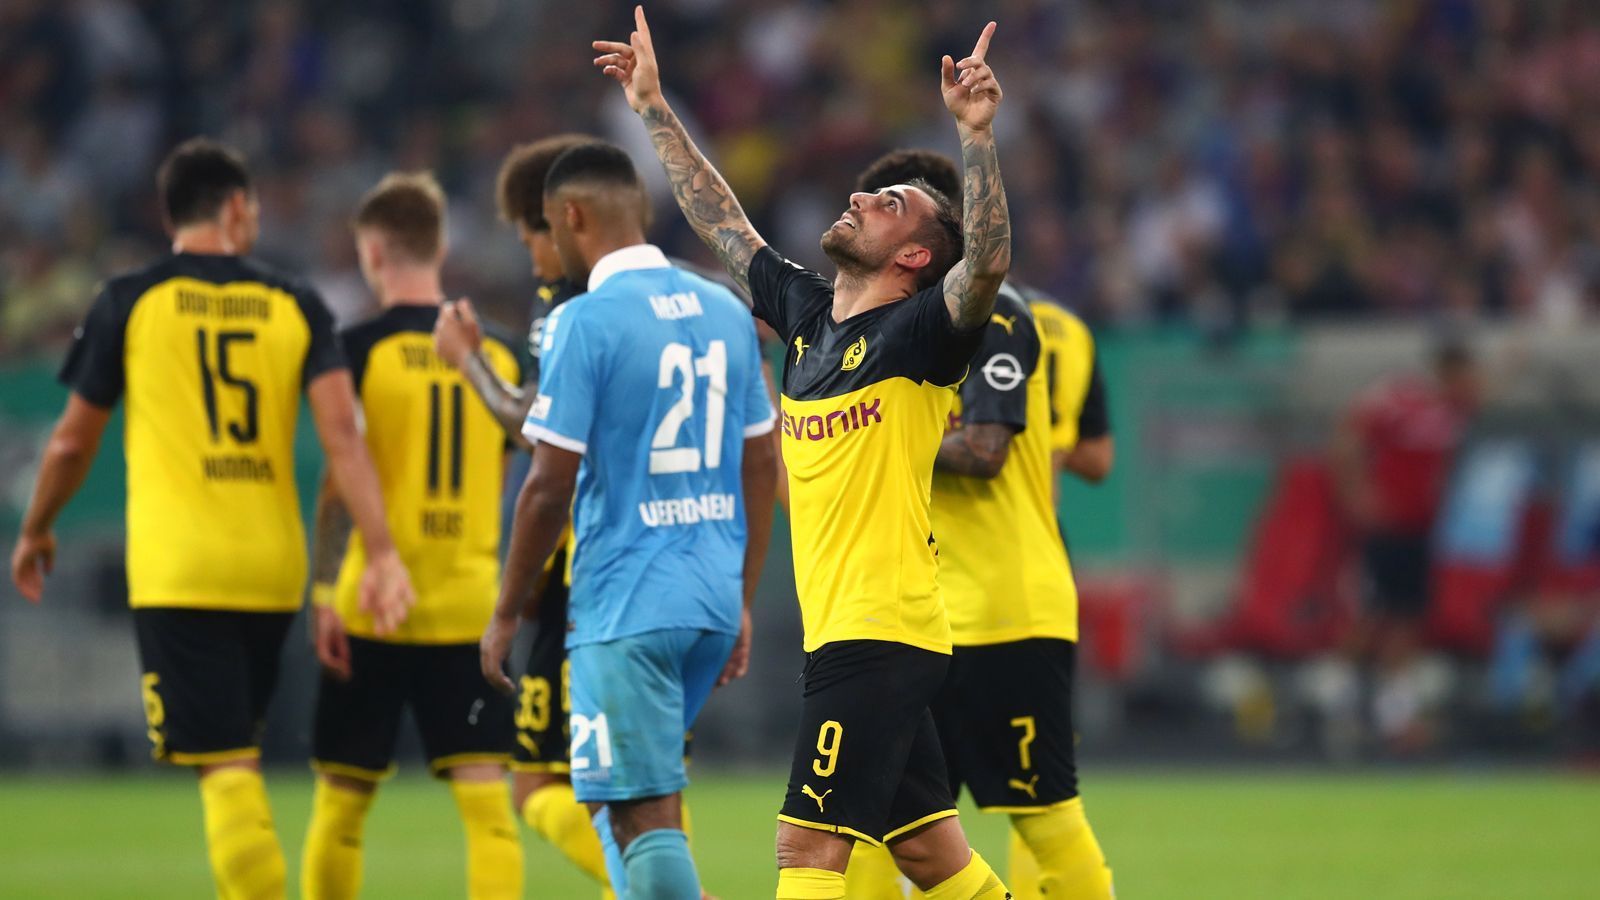 
                <strong>DFB-Pokal 2019/20: Borussia Dortmund beim KFC Uerdingen in der Einzelkritik</strong><br>
                Borussia Dortmund hat sich in der ersten Runde des DFB-Pokals keine Blöße gegeben und die Hürde Uerdingen souverän übersprungen. Wir haben den Auftritt des BVB benotet.
              